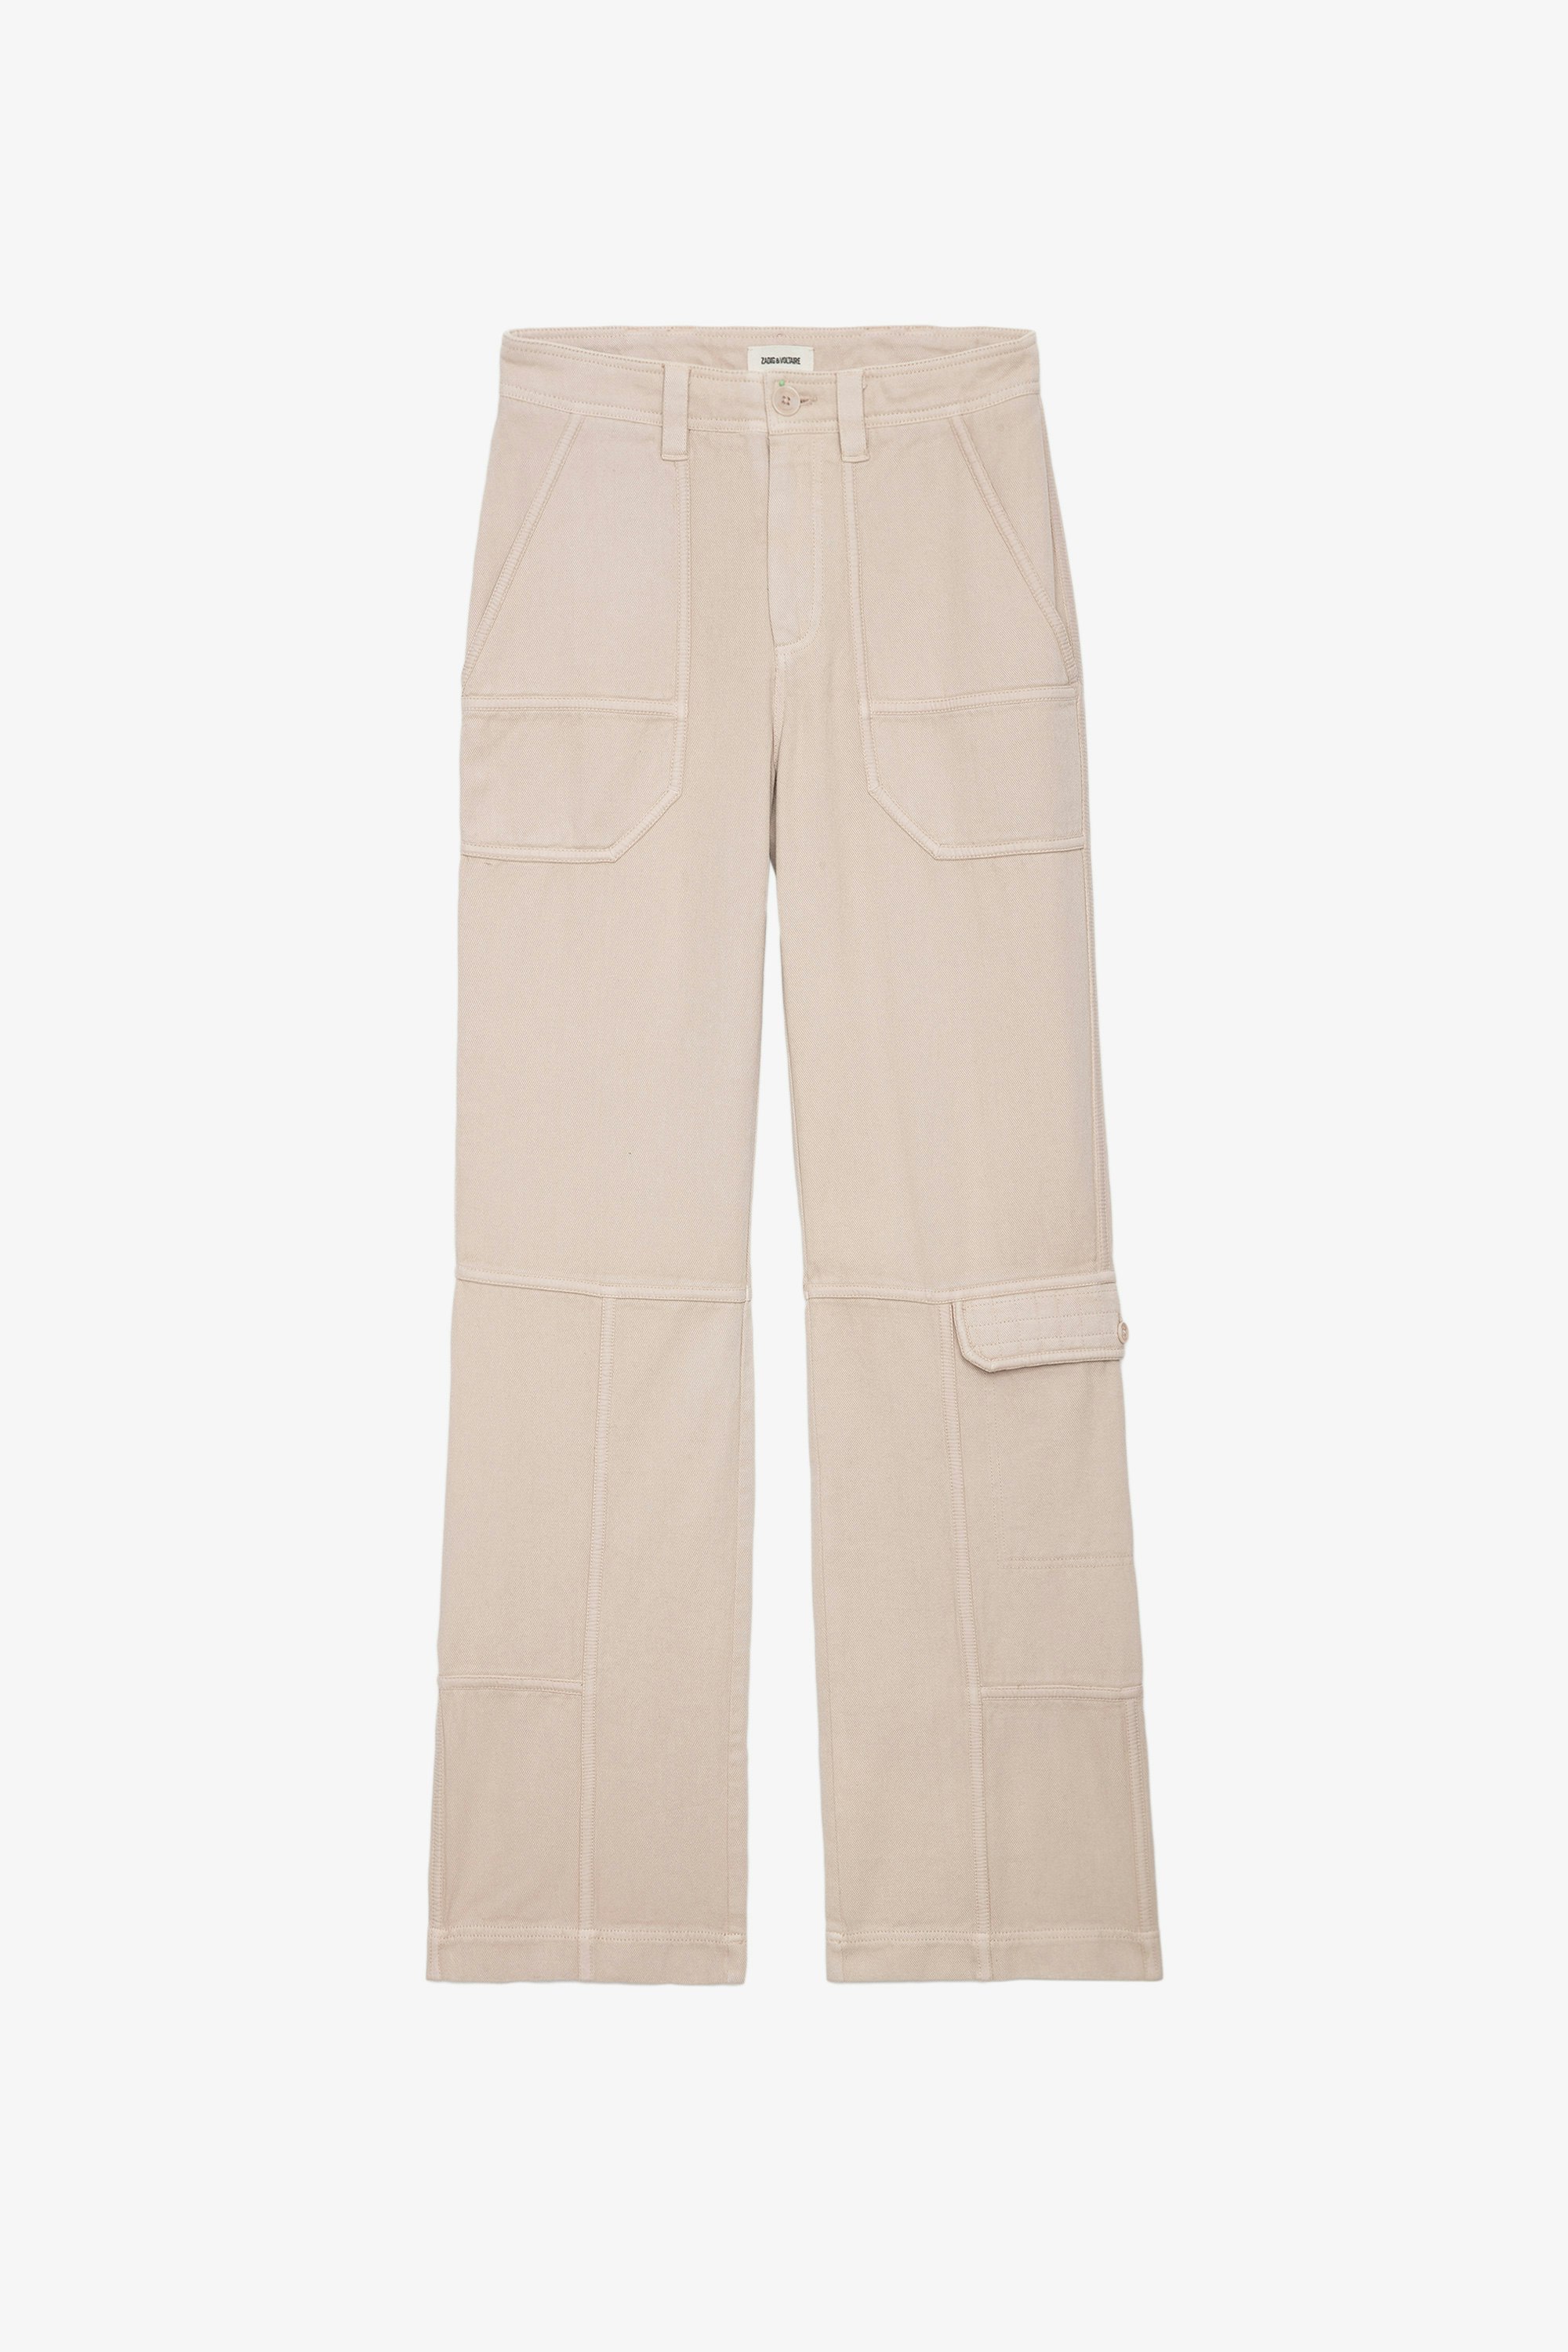 Pantalon Pepper - Pantalon en sergé de coton beige à détails contrastés.